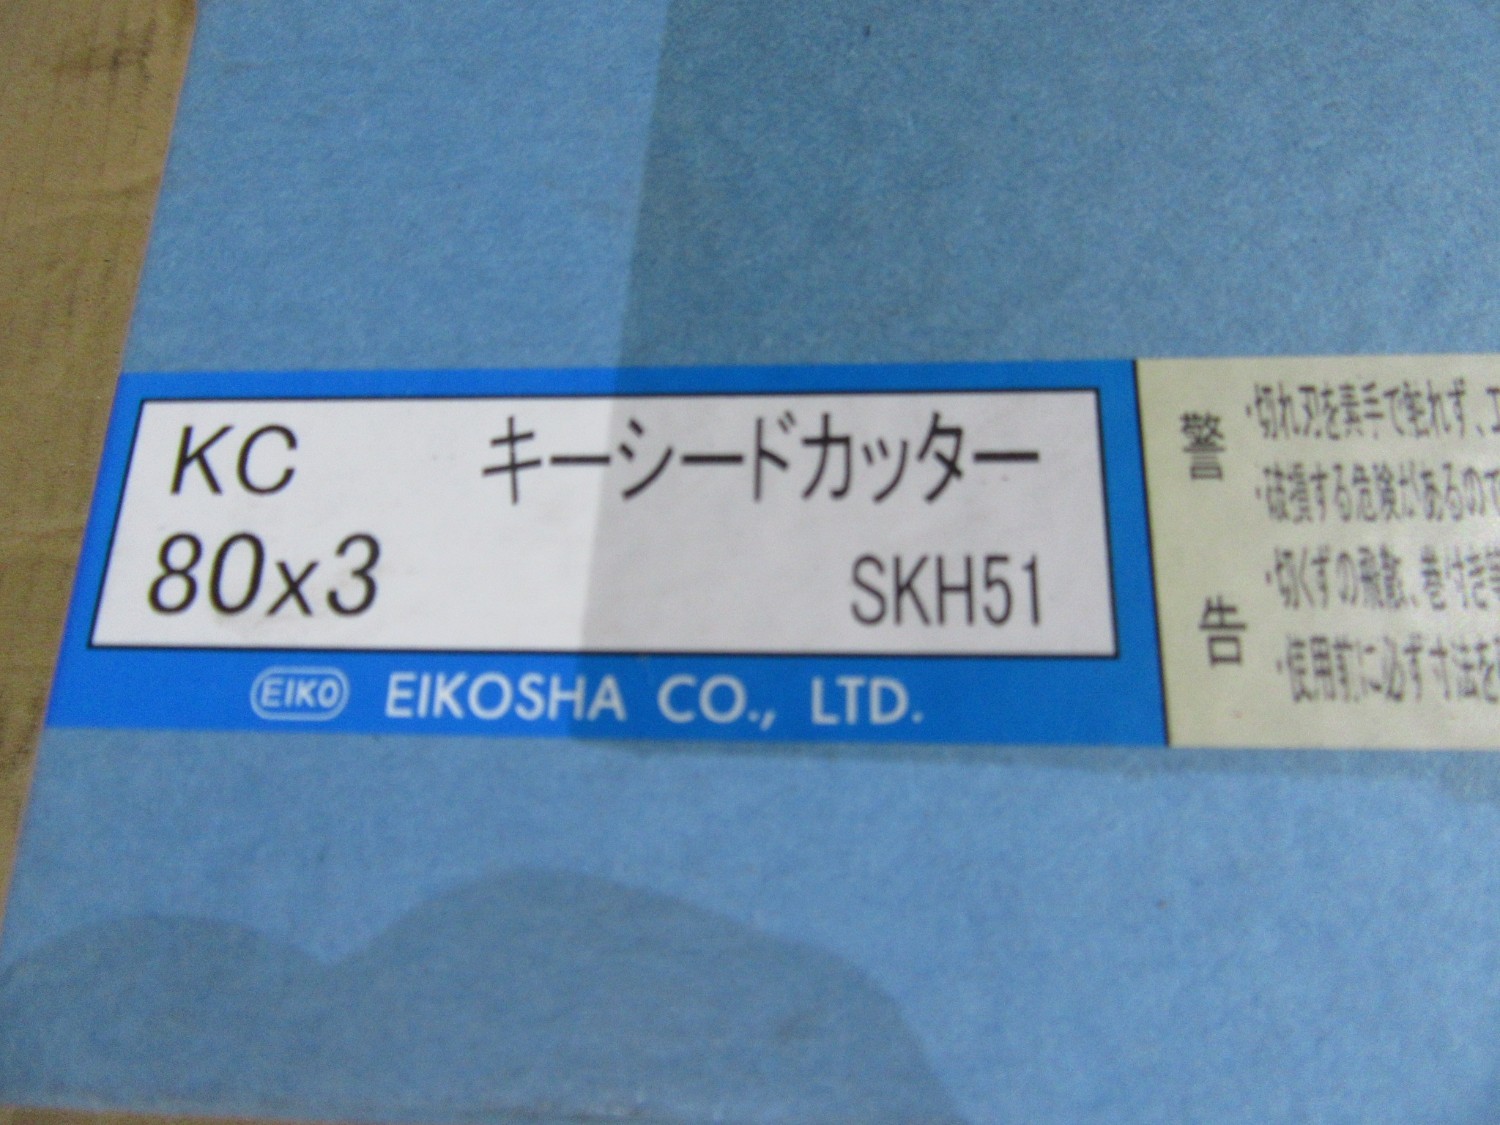 中古Other キーシードカッター KC80X3(SKH51)  EIKOSHA 